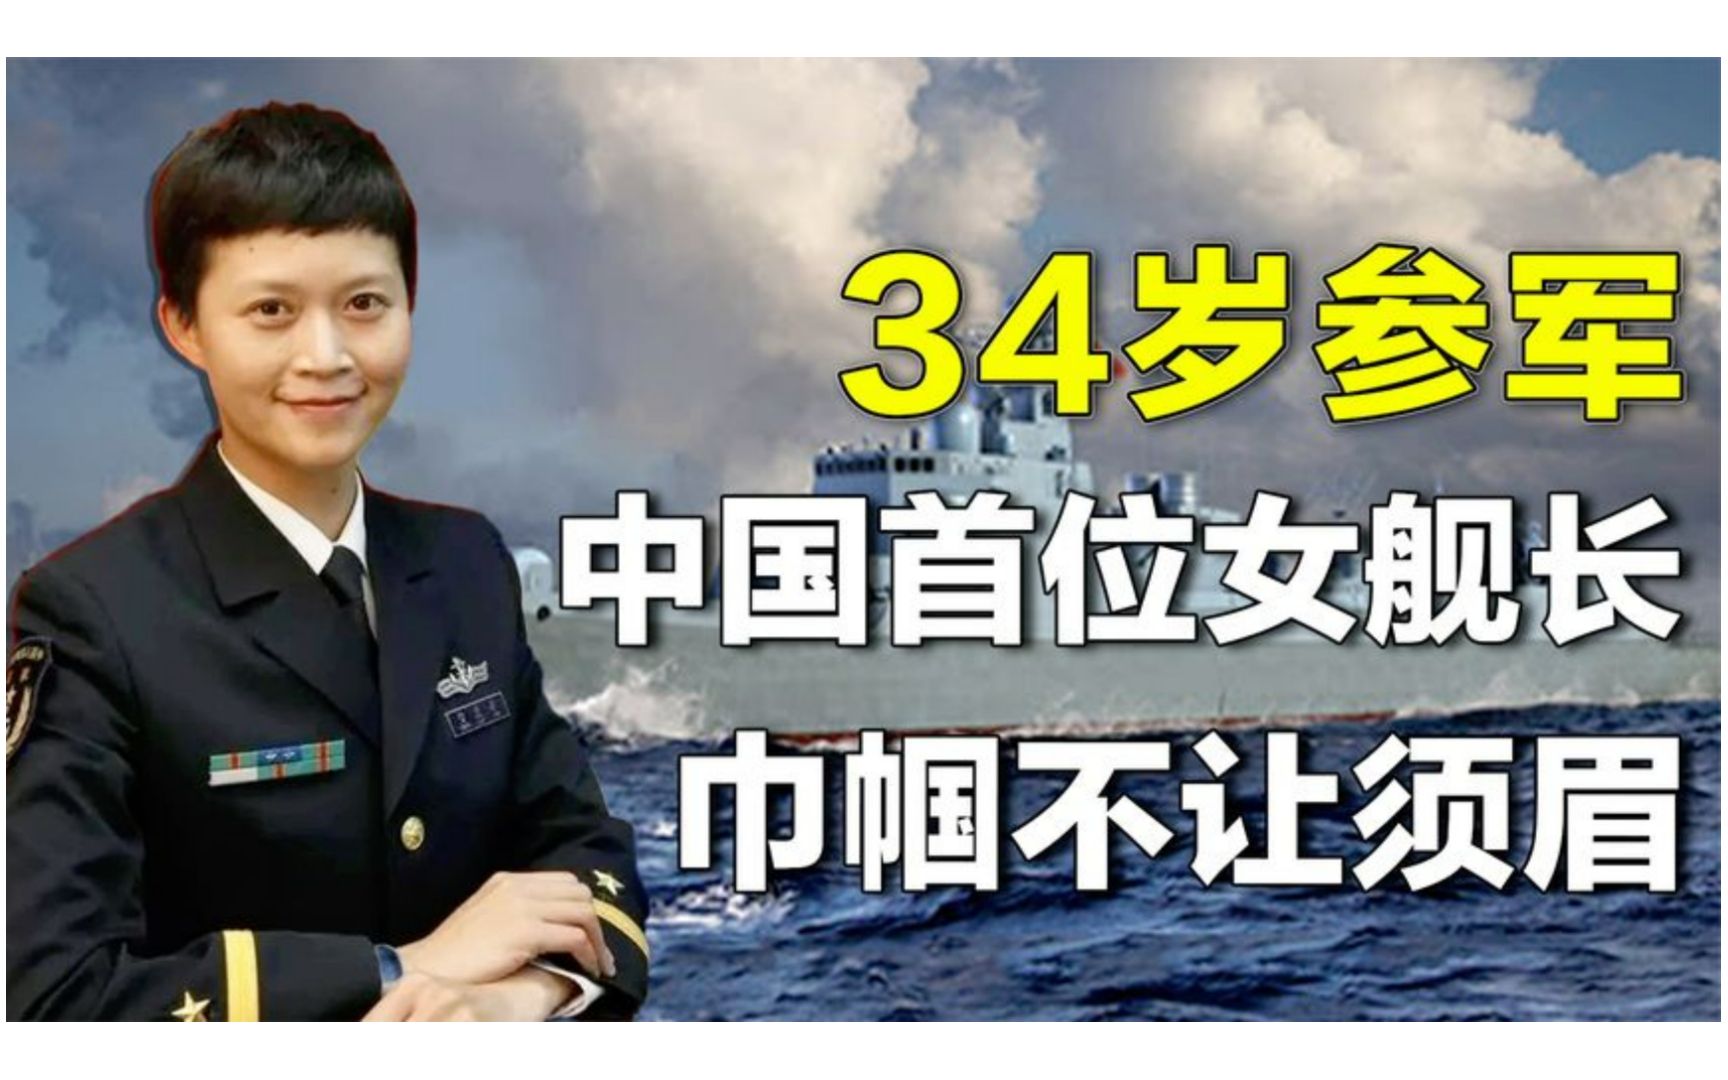 拒华为百万年薪,34岁高龄参军,中国首位女舰长韦慧晓的开挂人生